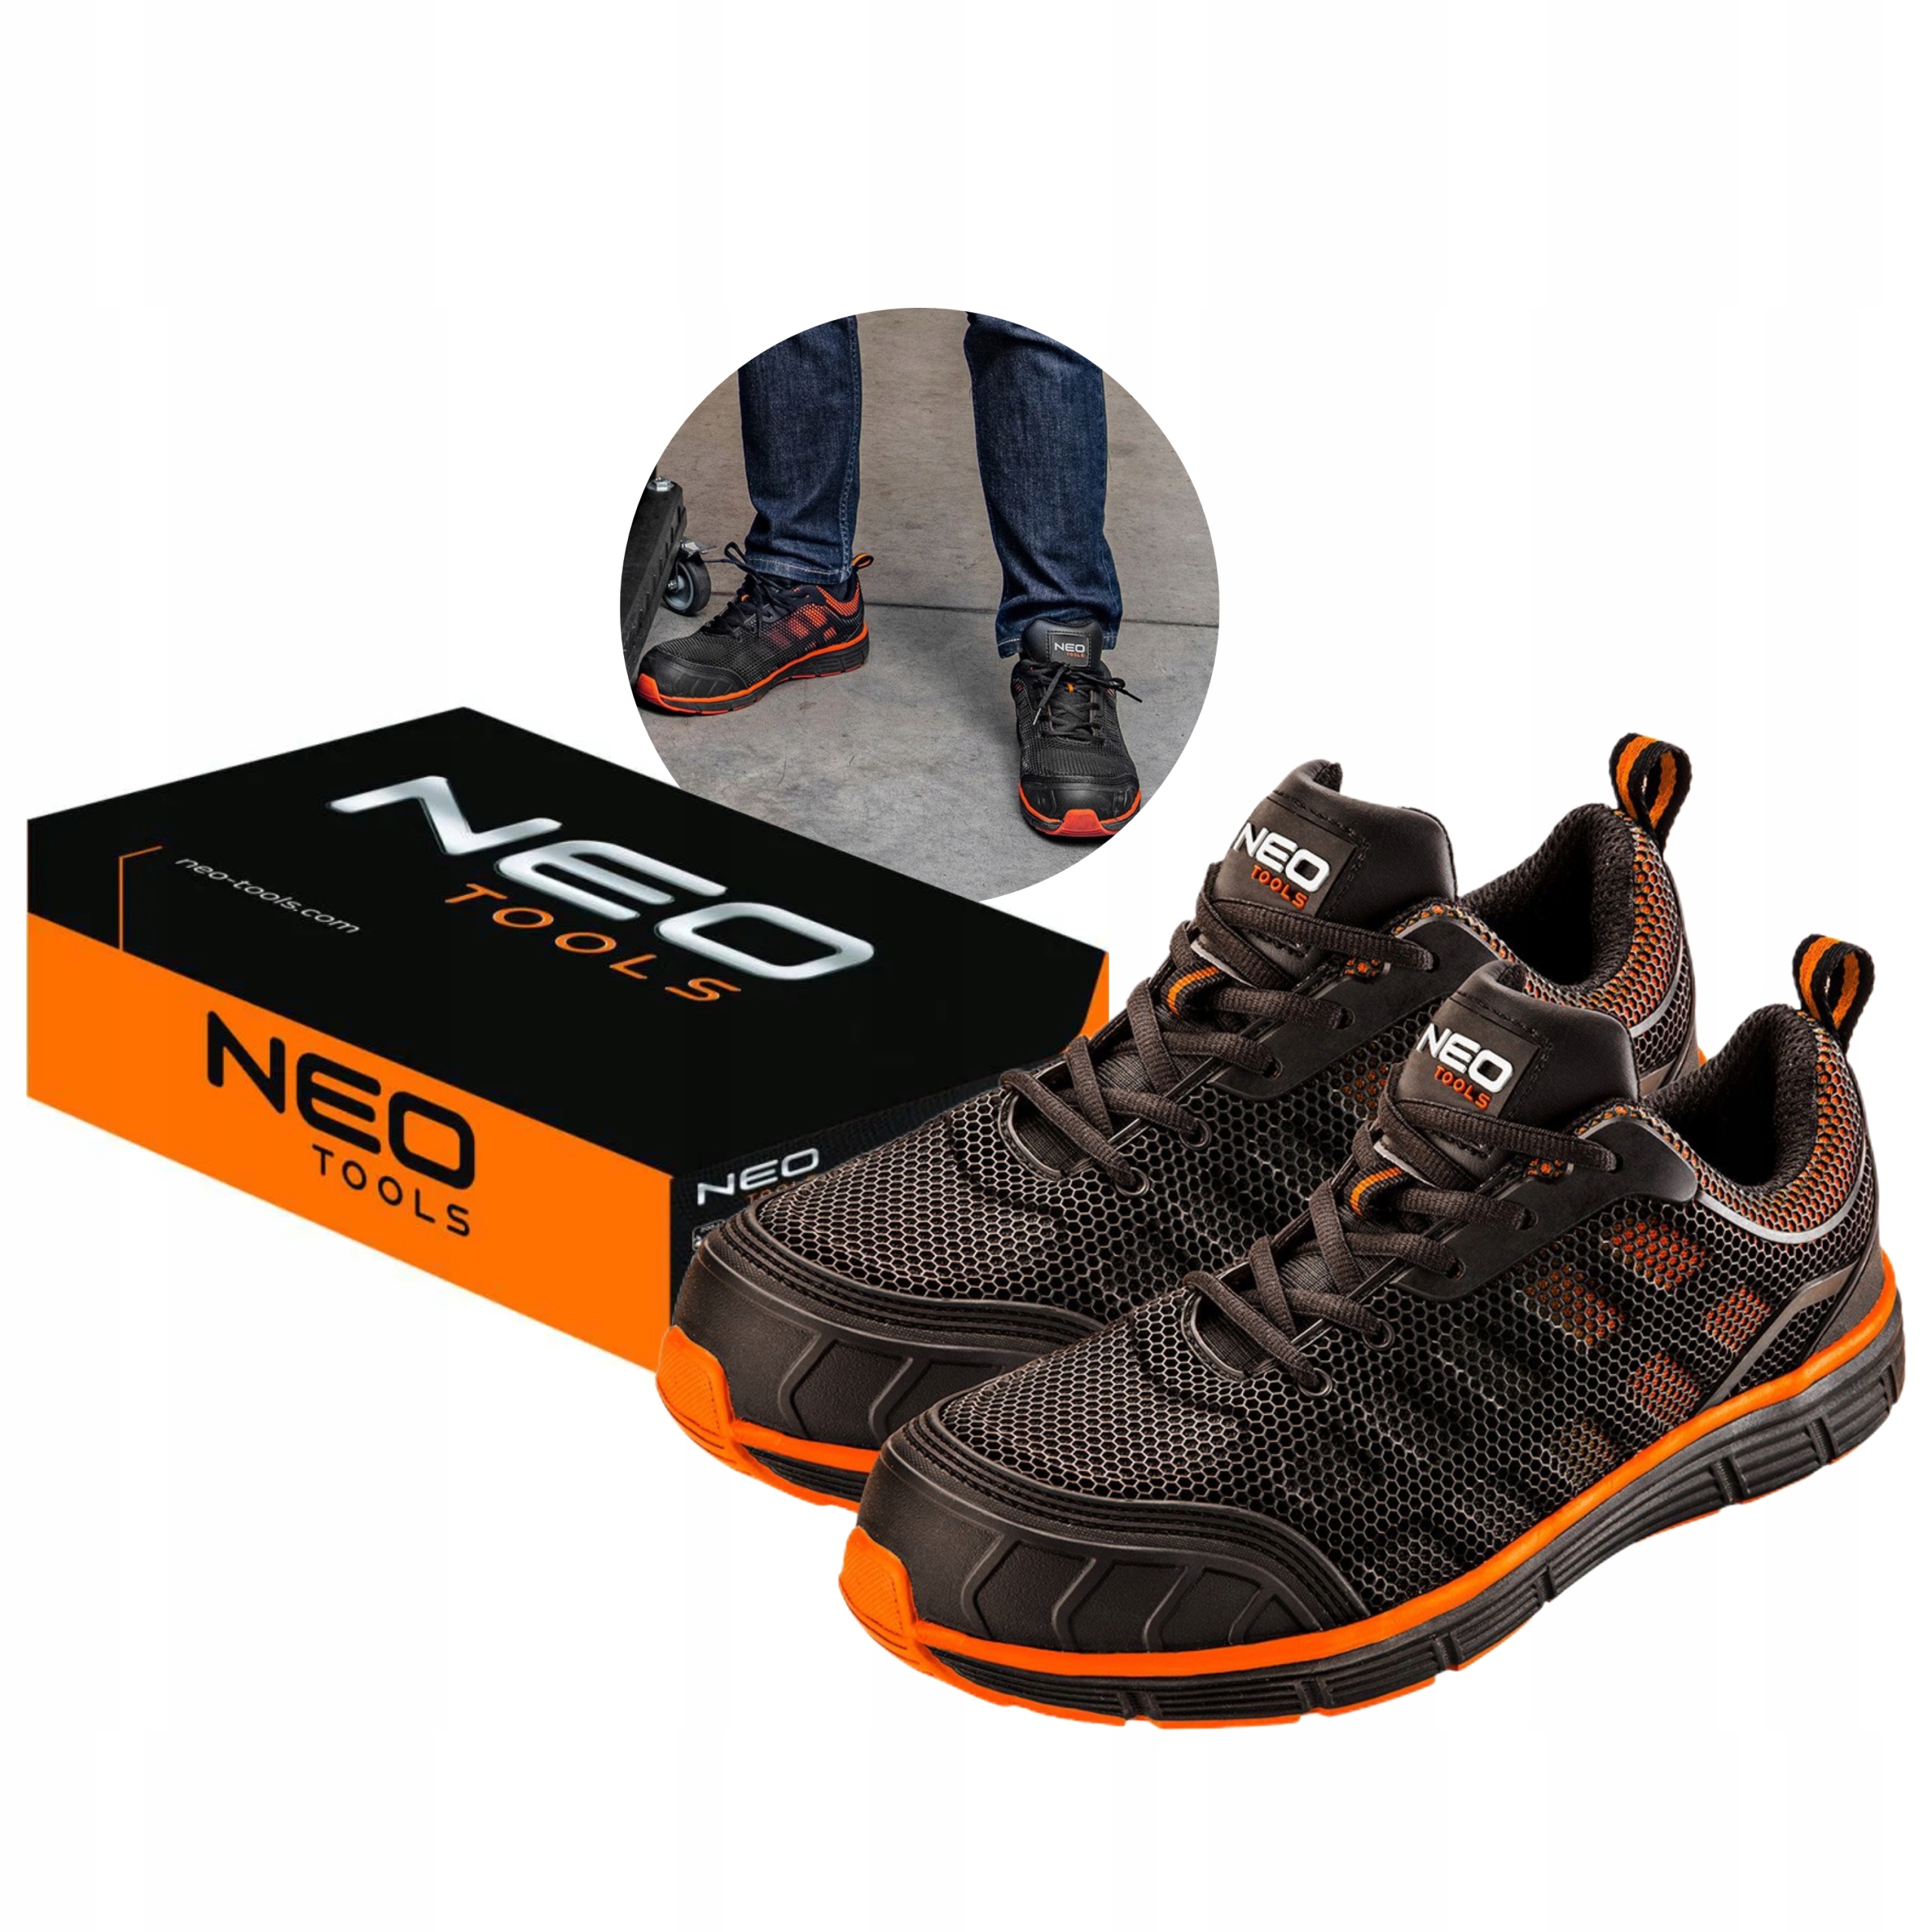 Дышащая рабочая обувь neo tools 82095 размер 44 купить с доставкой\u200b изПольши\u200b с Allegro на FastBox 7483181648